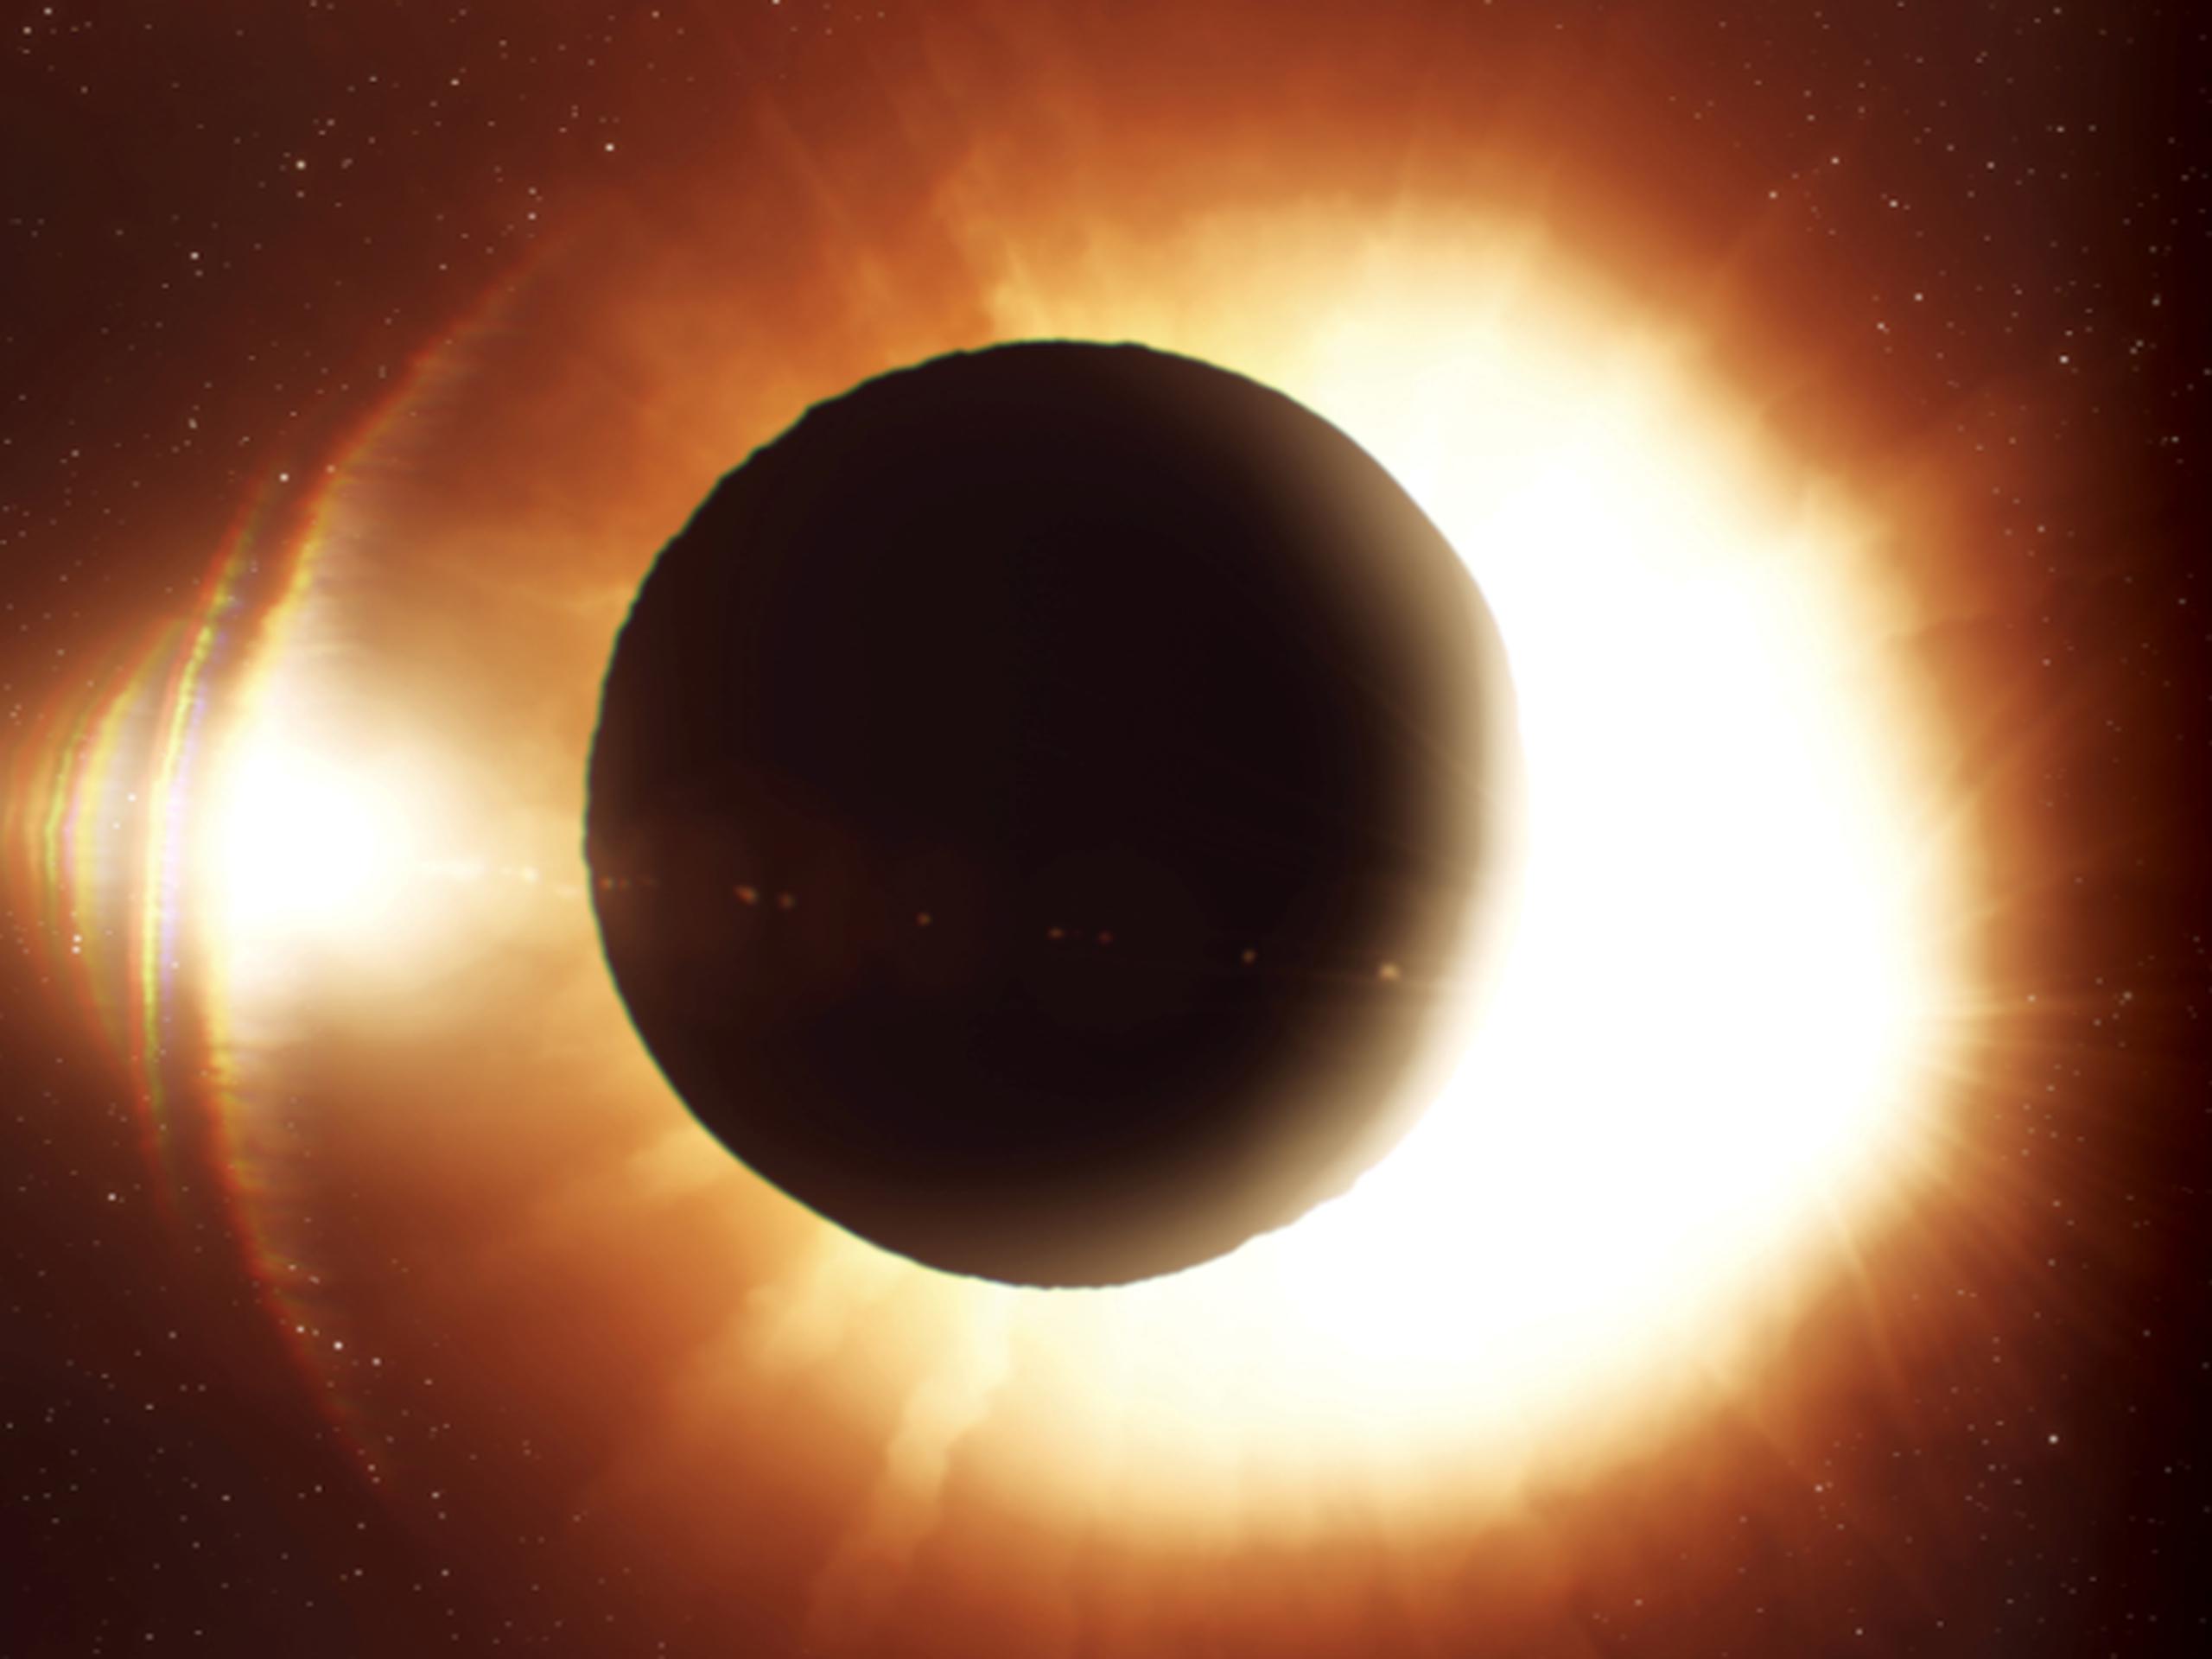 La observación del Eclipse Solar será más prominente en las siguientes horas: 12:10pm, 1:59pm, 3:49pm y 4:55pm.